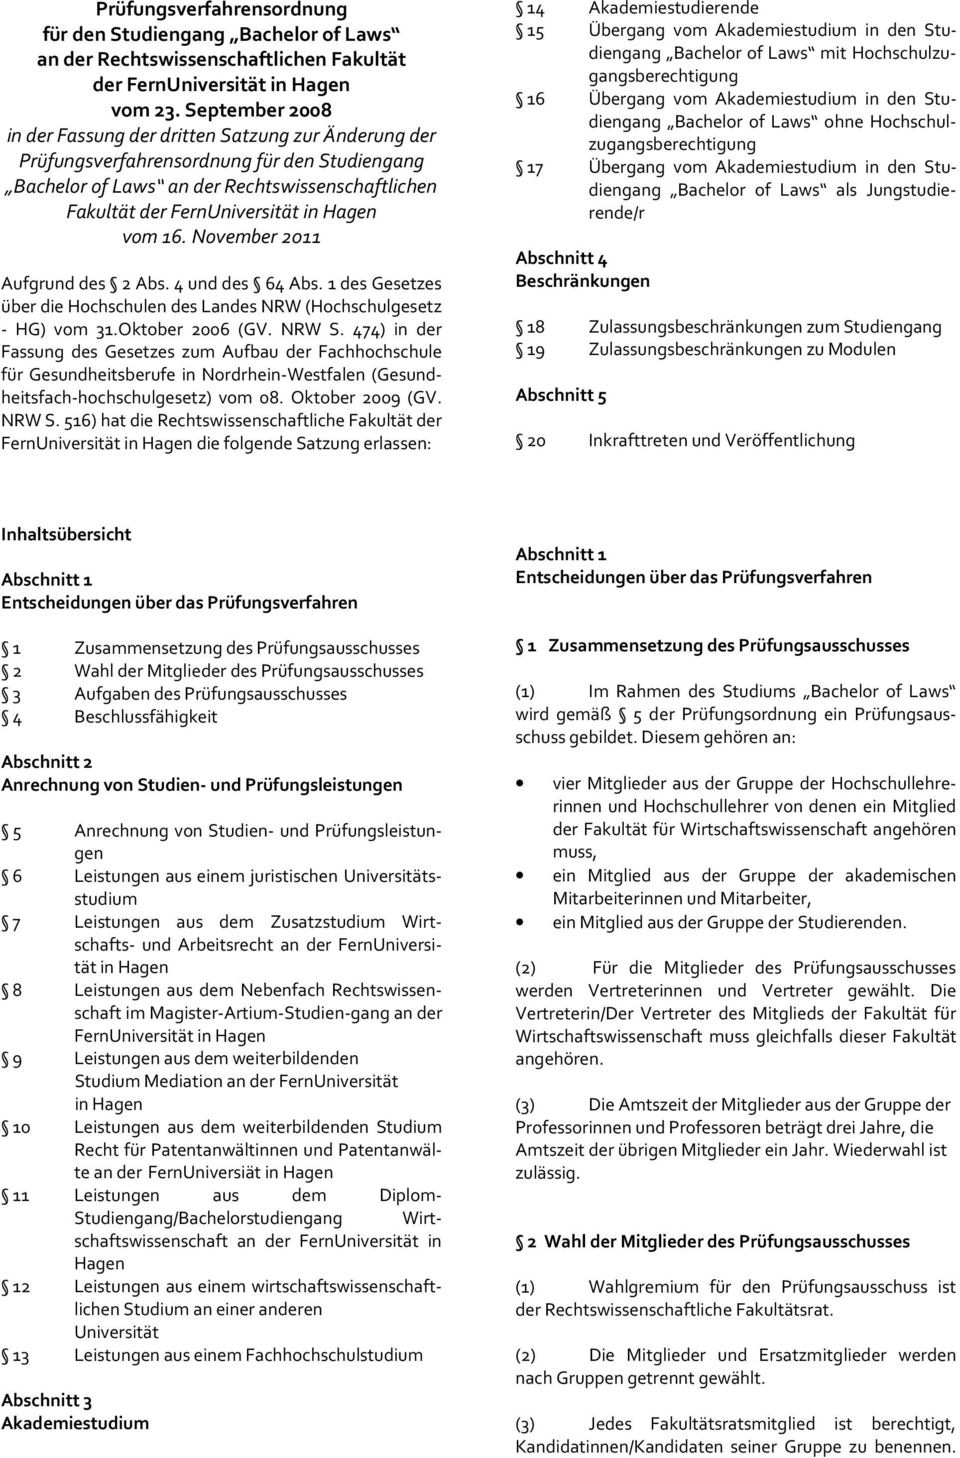 November 2011 Aufgrund des 2 Abs. 4 und des 64 Abs. 1 des Gesetzes über die Hochschulen des Landes NRW (Hochschulgesetz - HG) vom 31.Oktober 2006 (GV. NRW S.